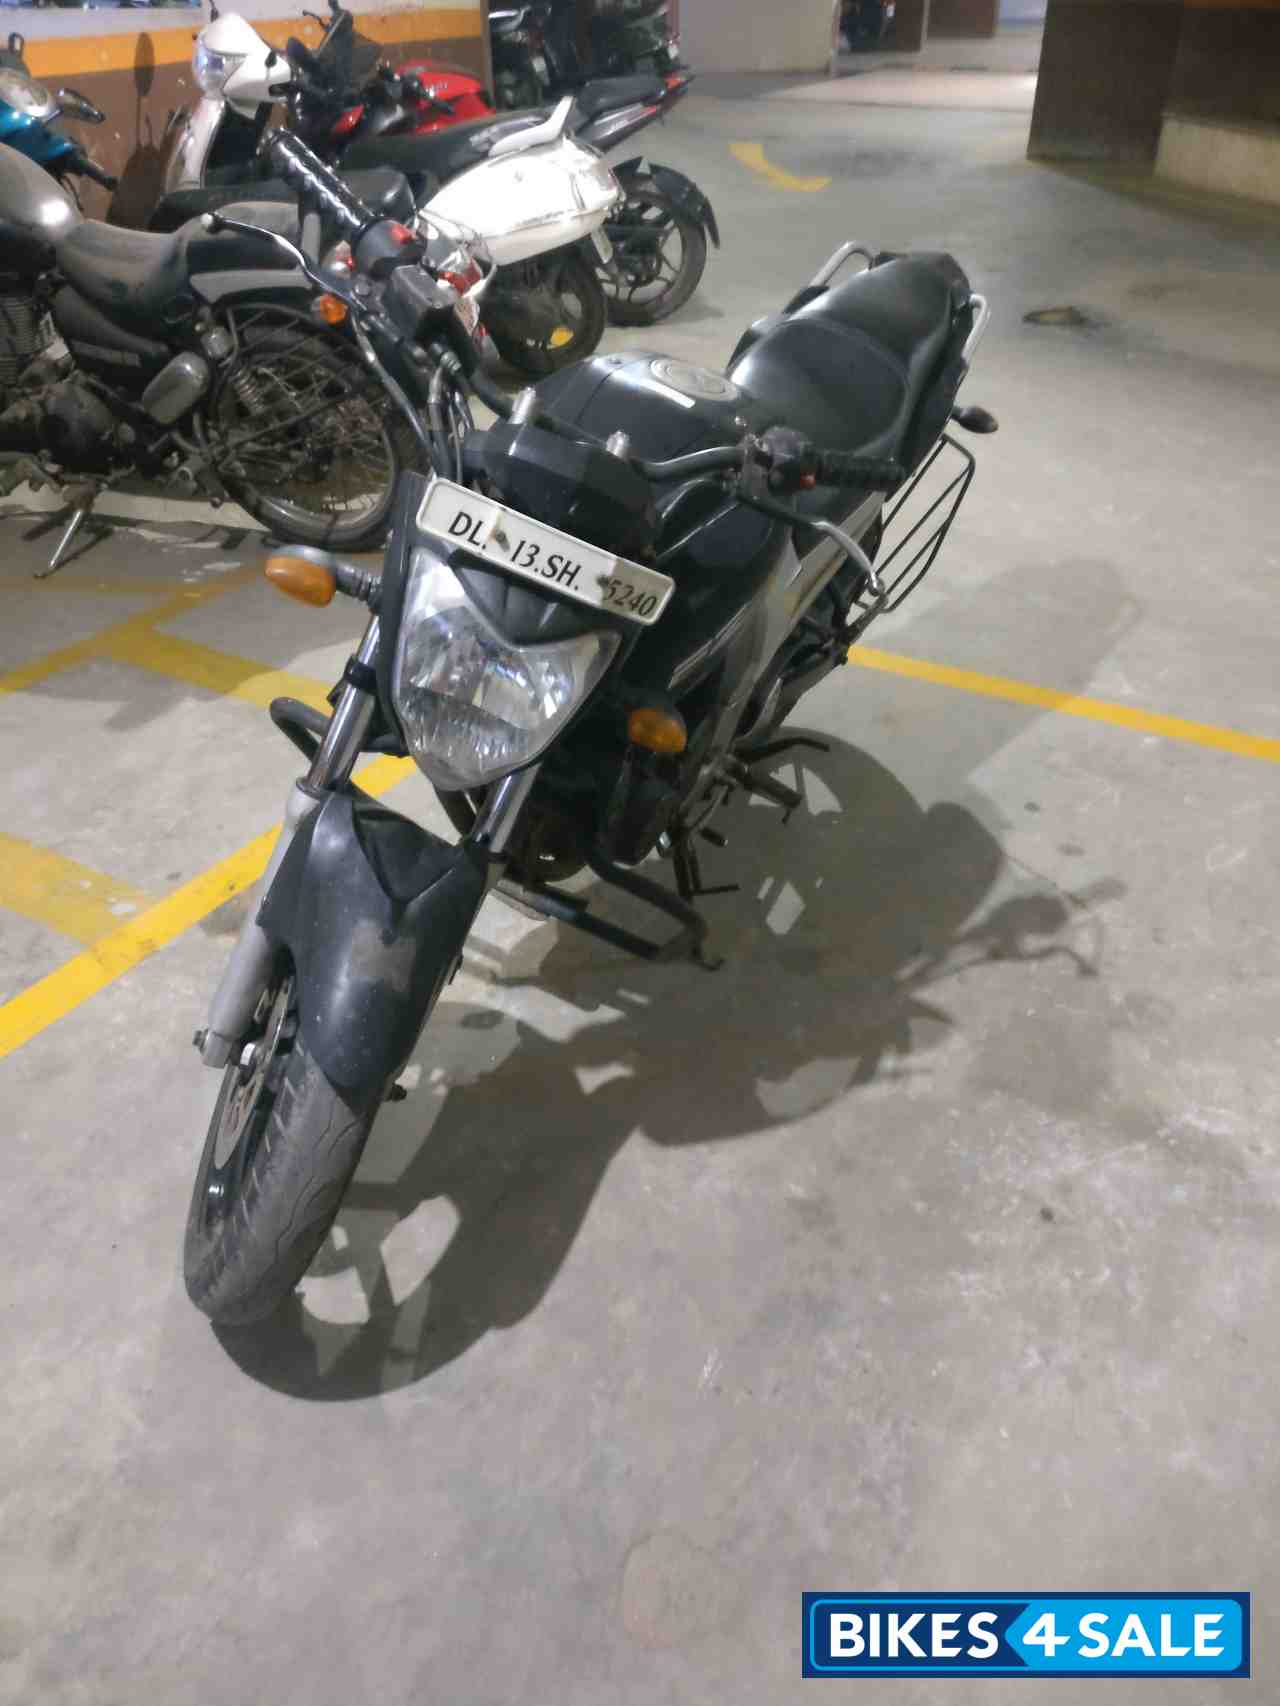 Black Yamaha FZ